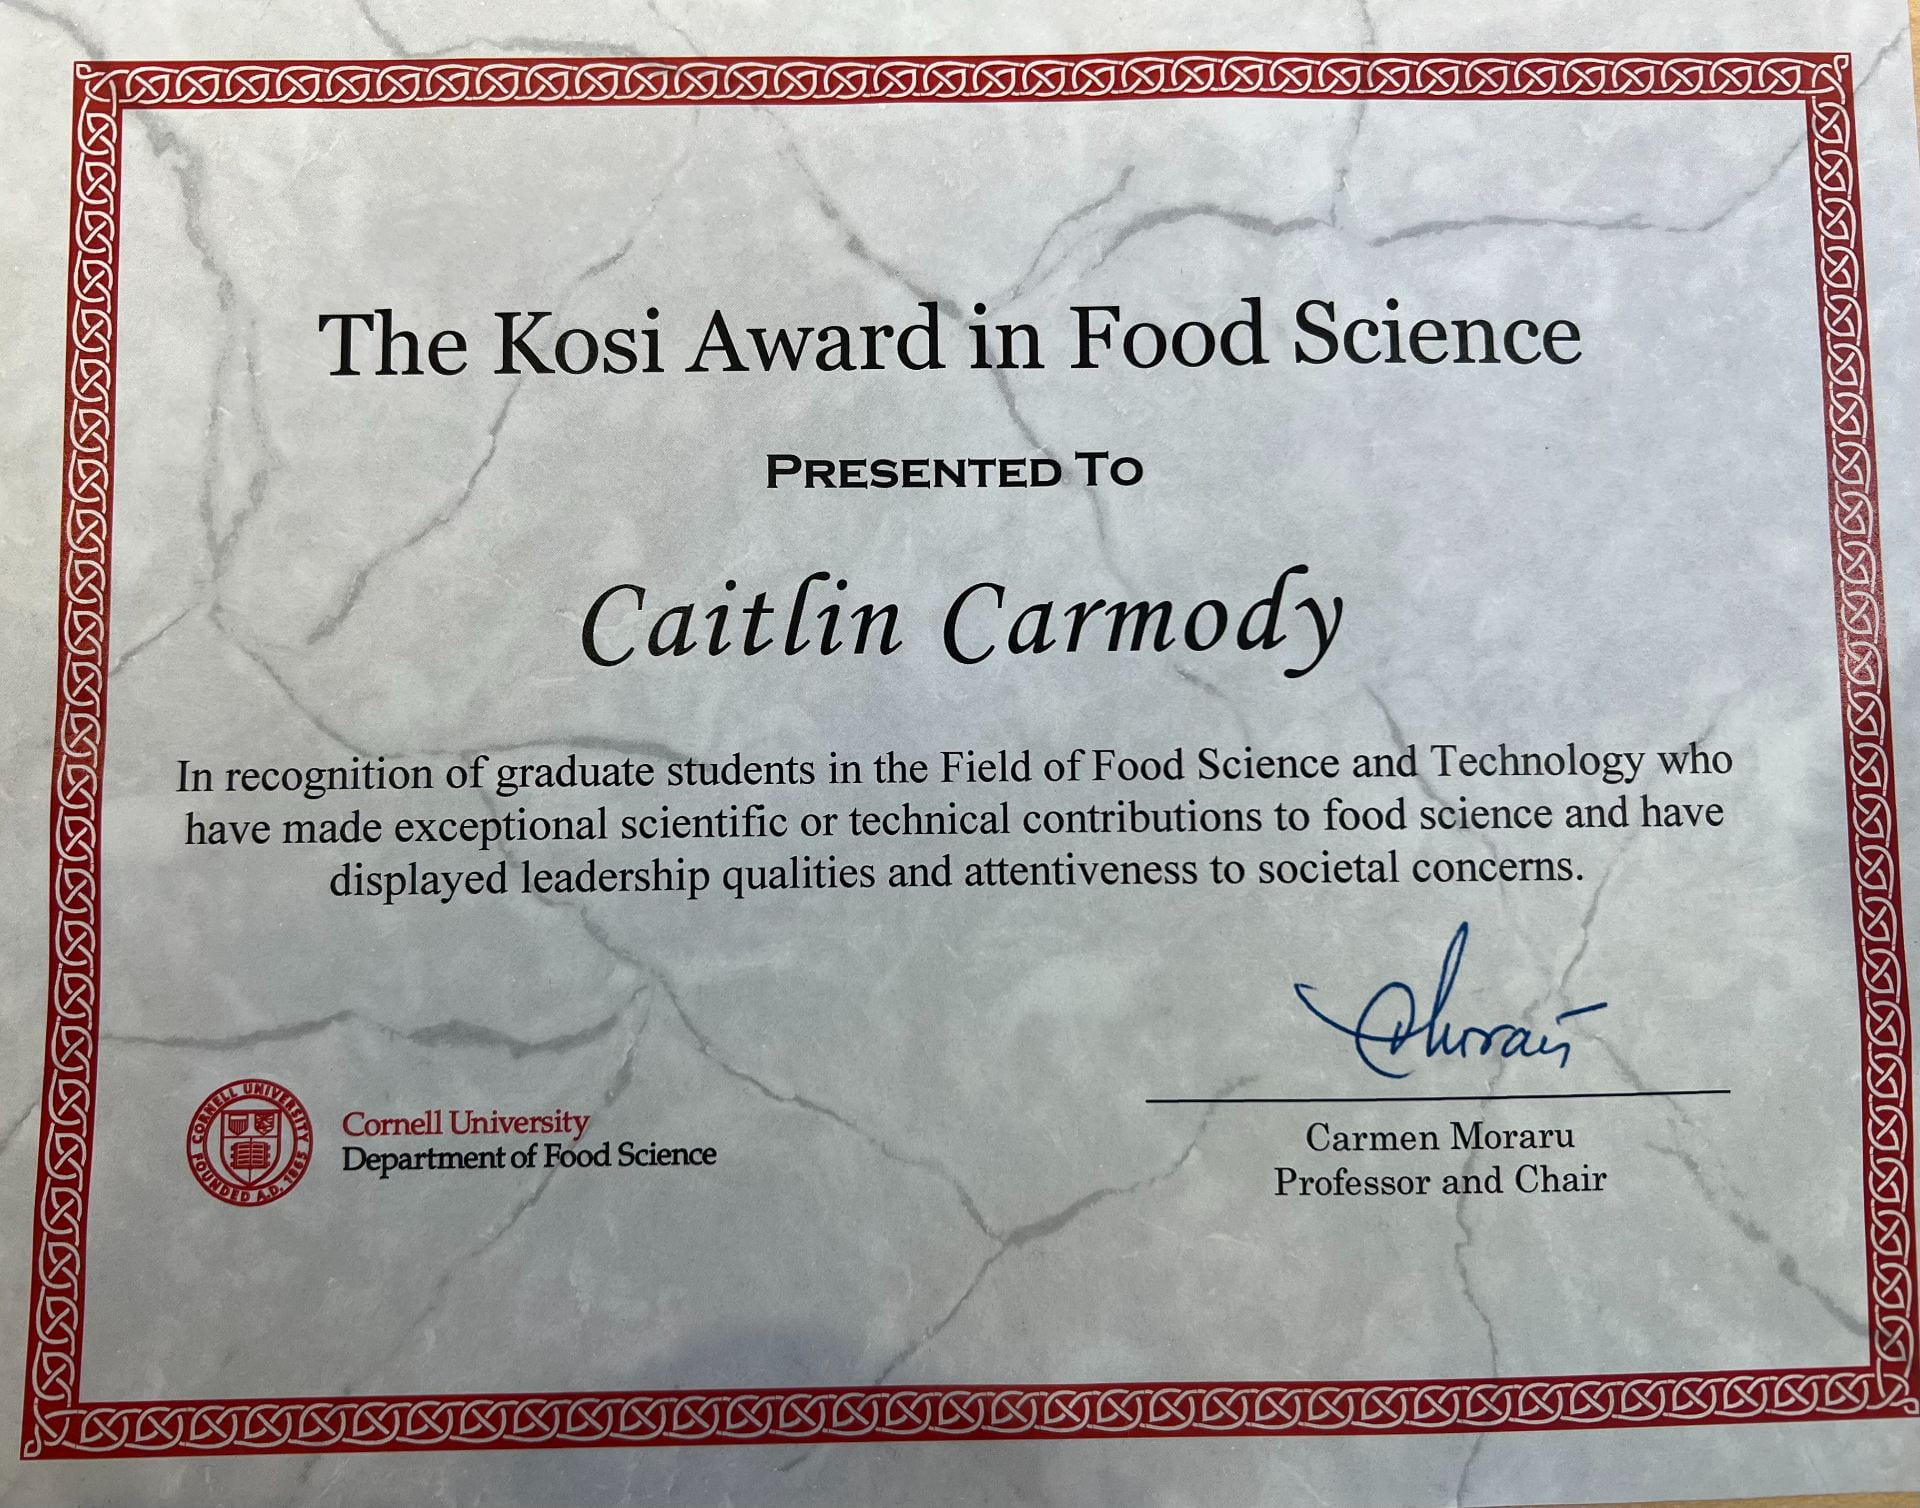 Kosi Award in Food Science